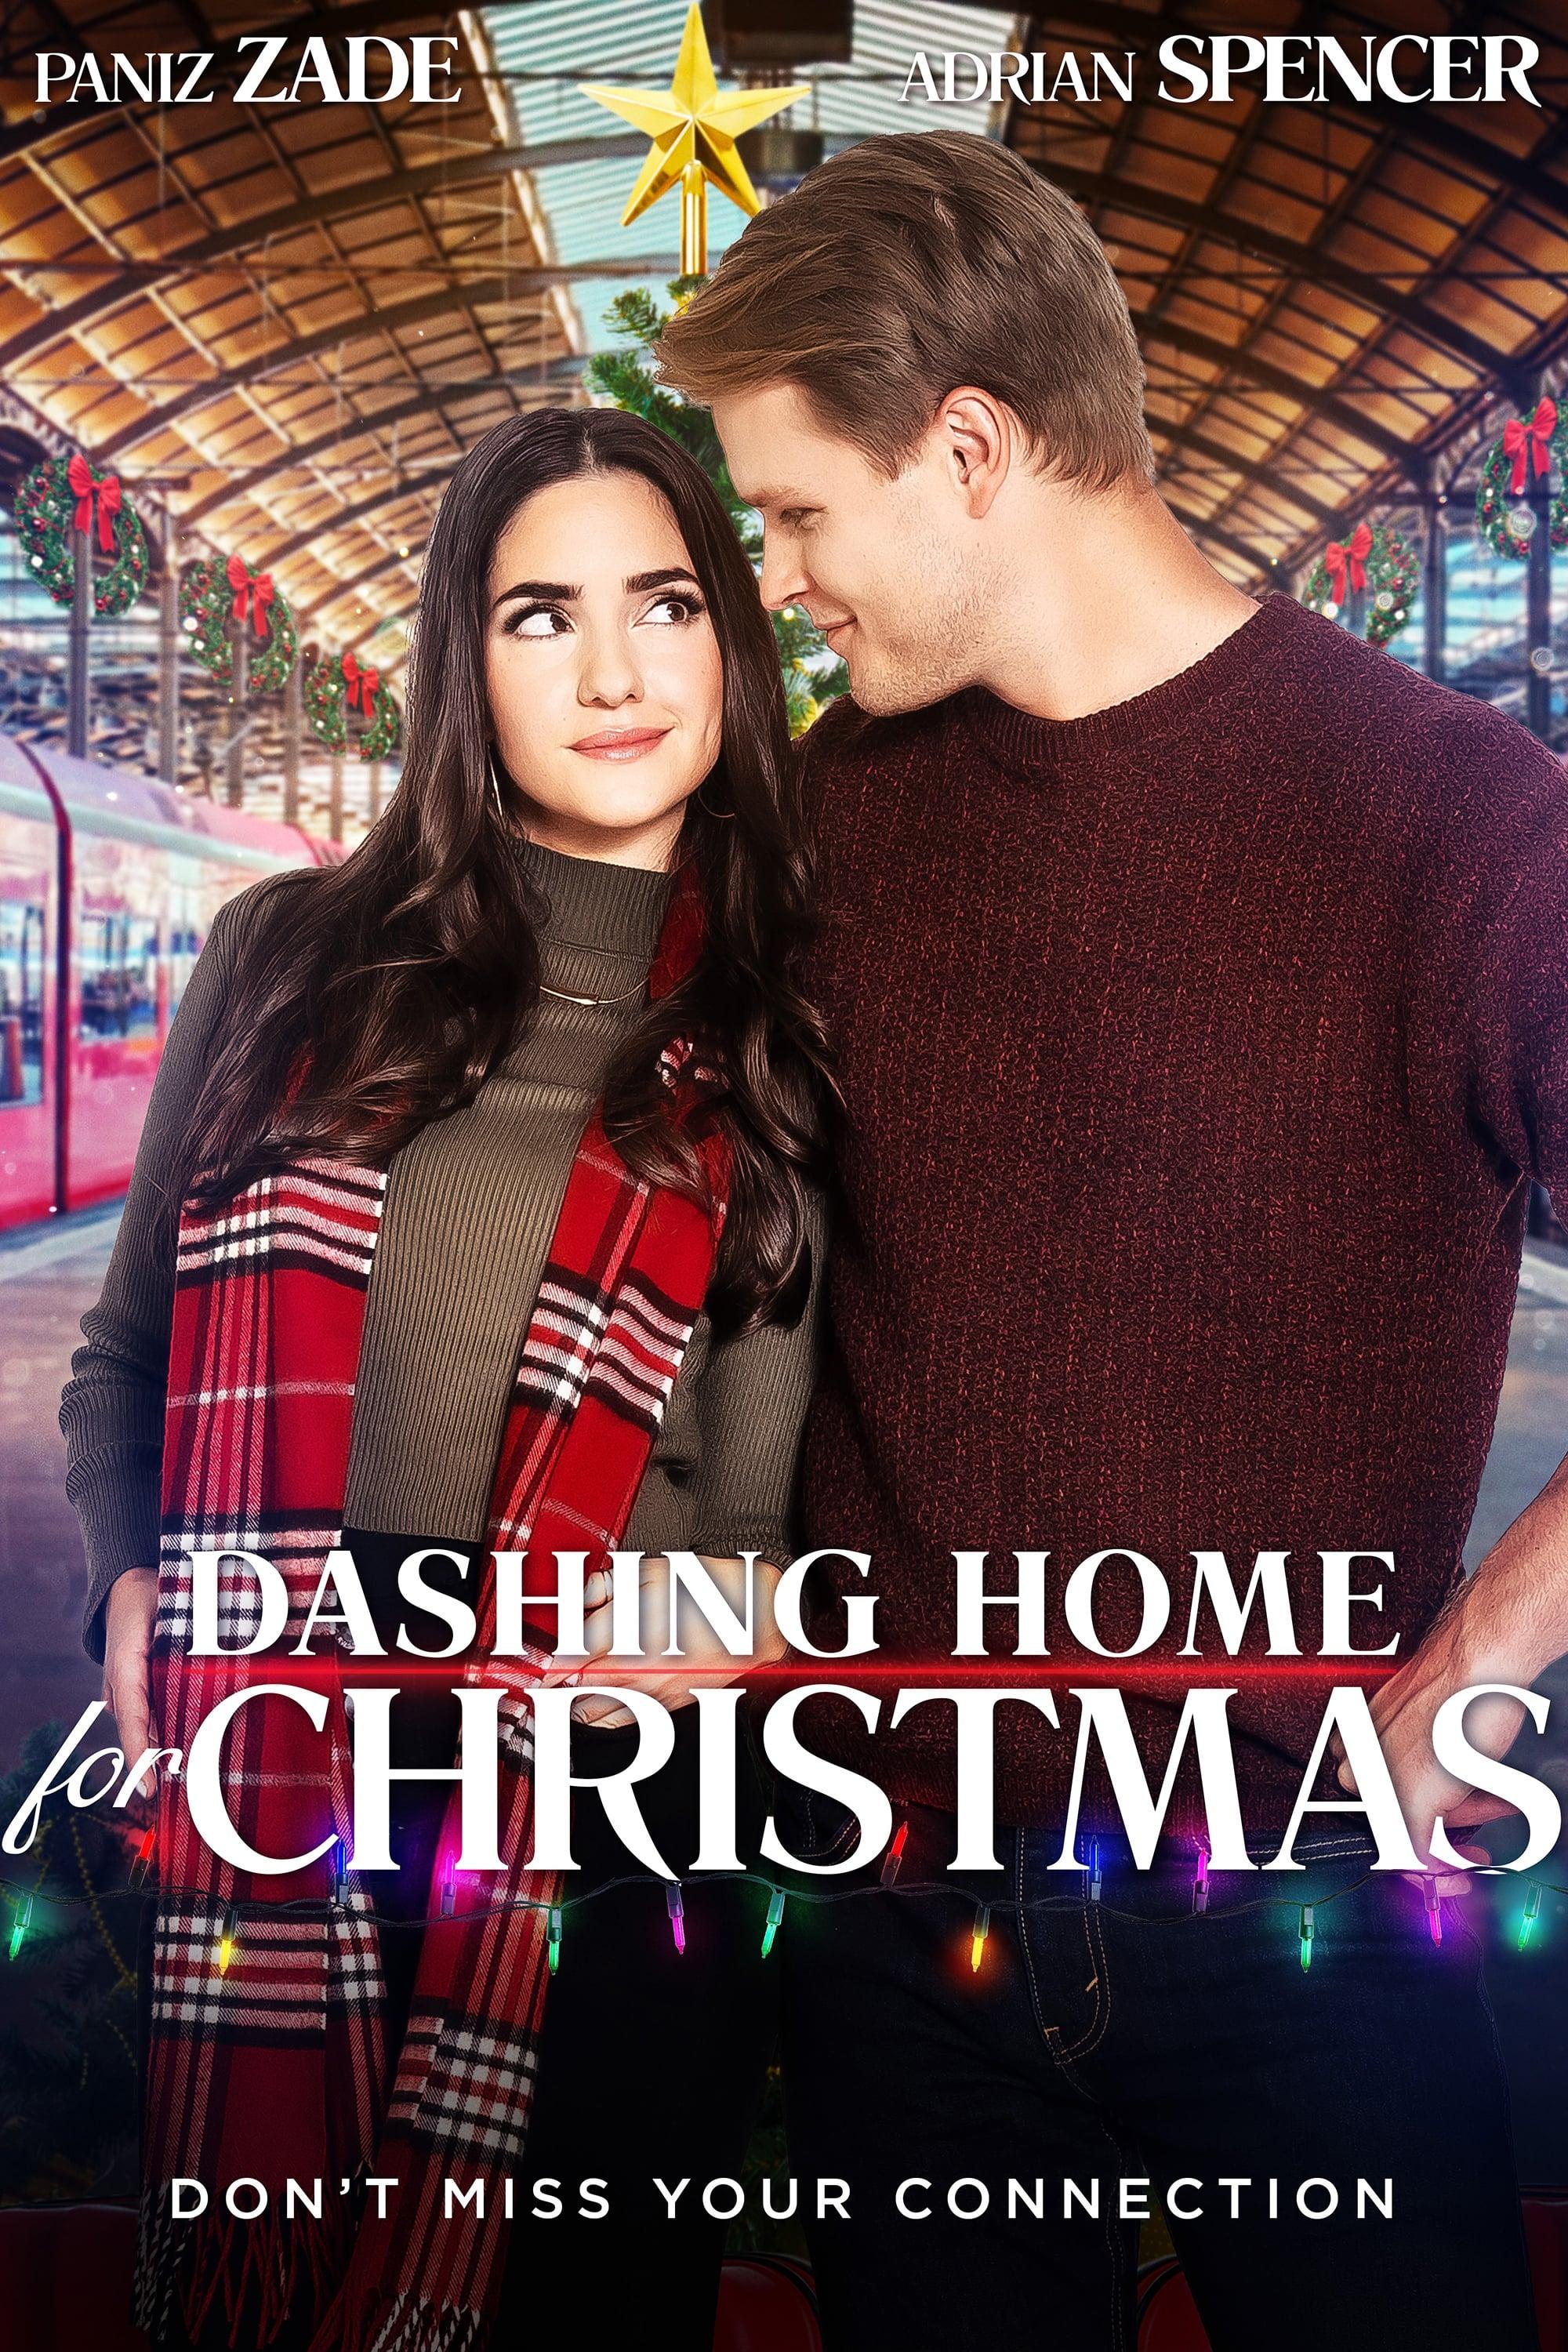 Dashing Home for Christmas poster